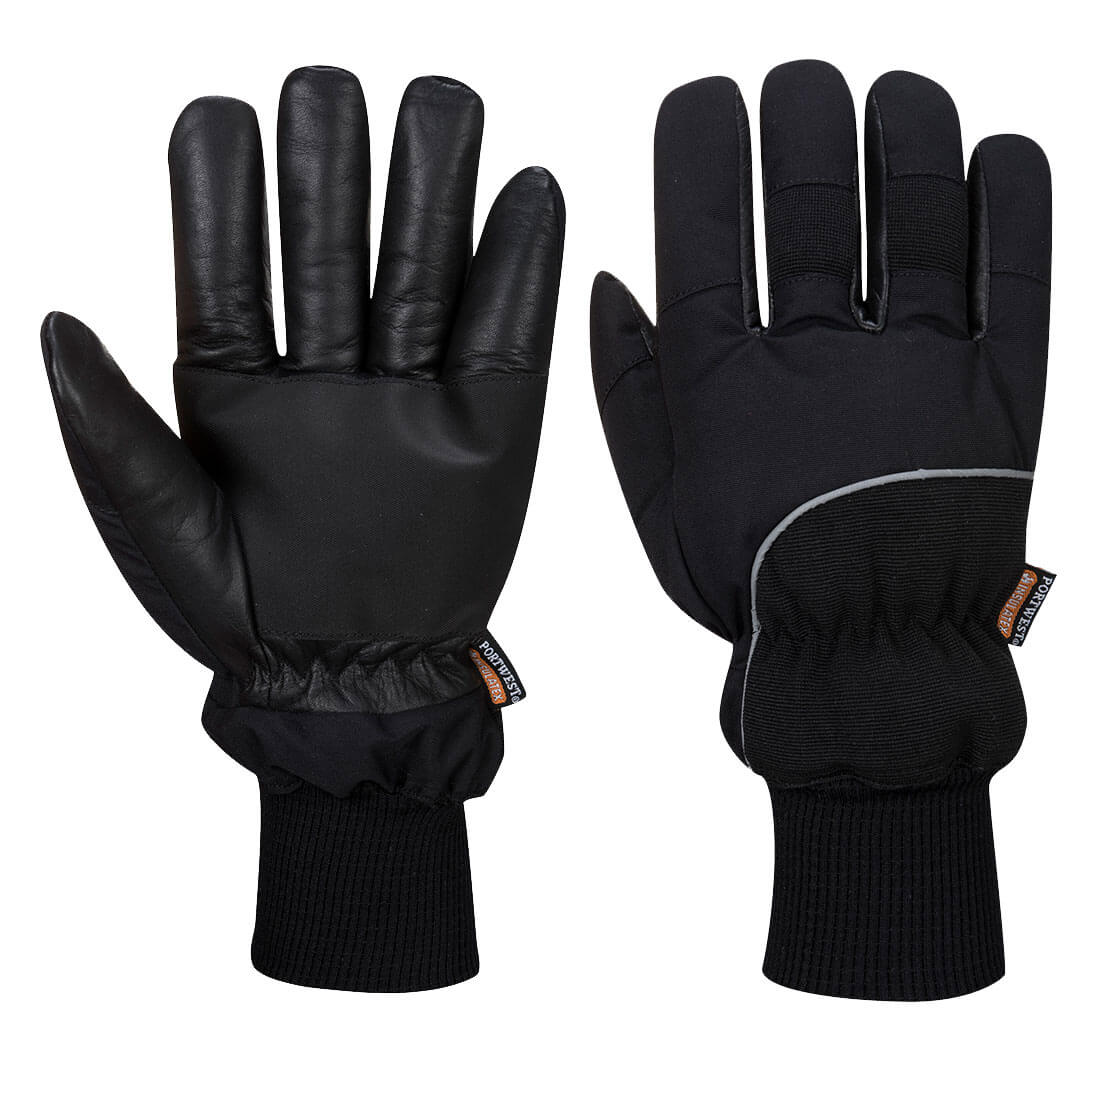 Apacha Cold Store Glove  (A751)